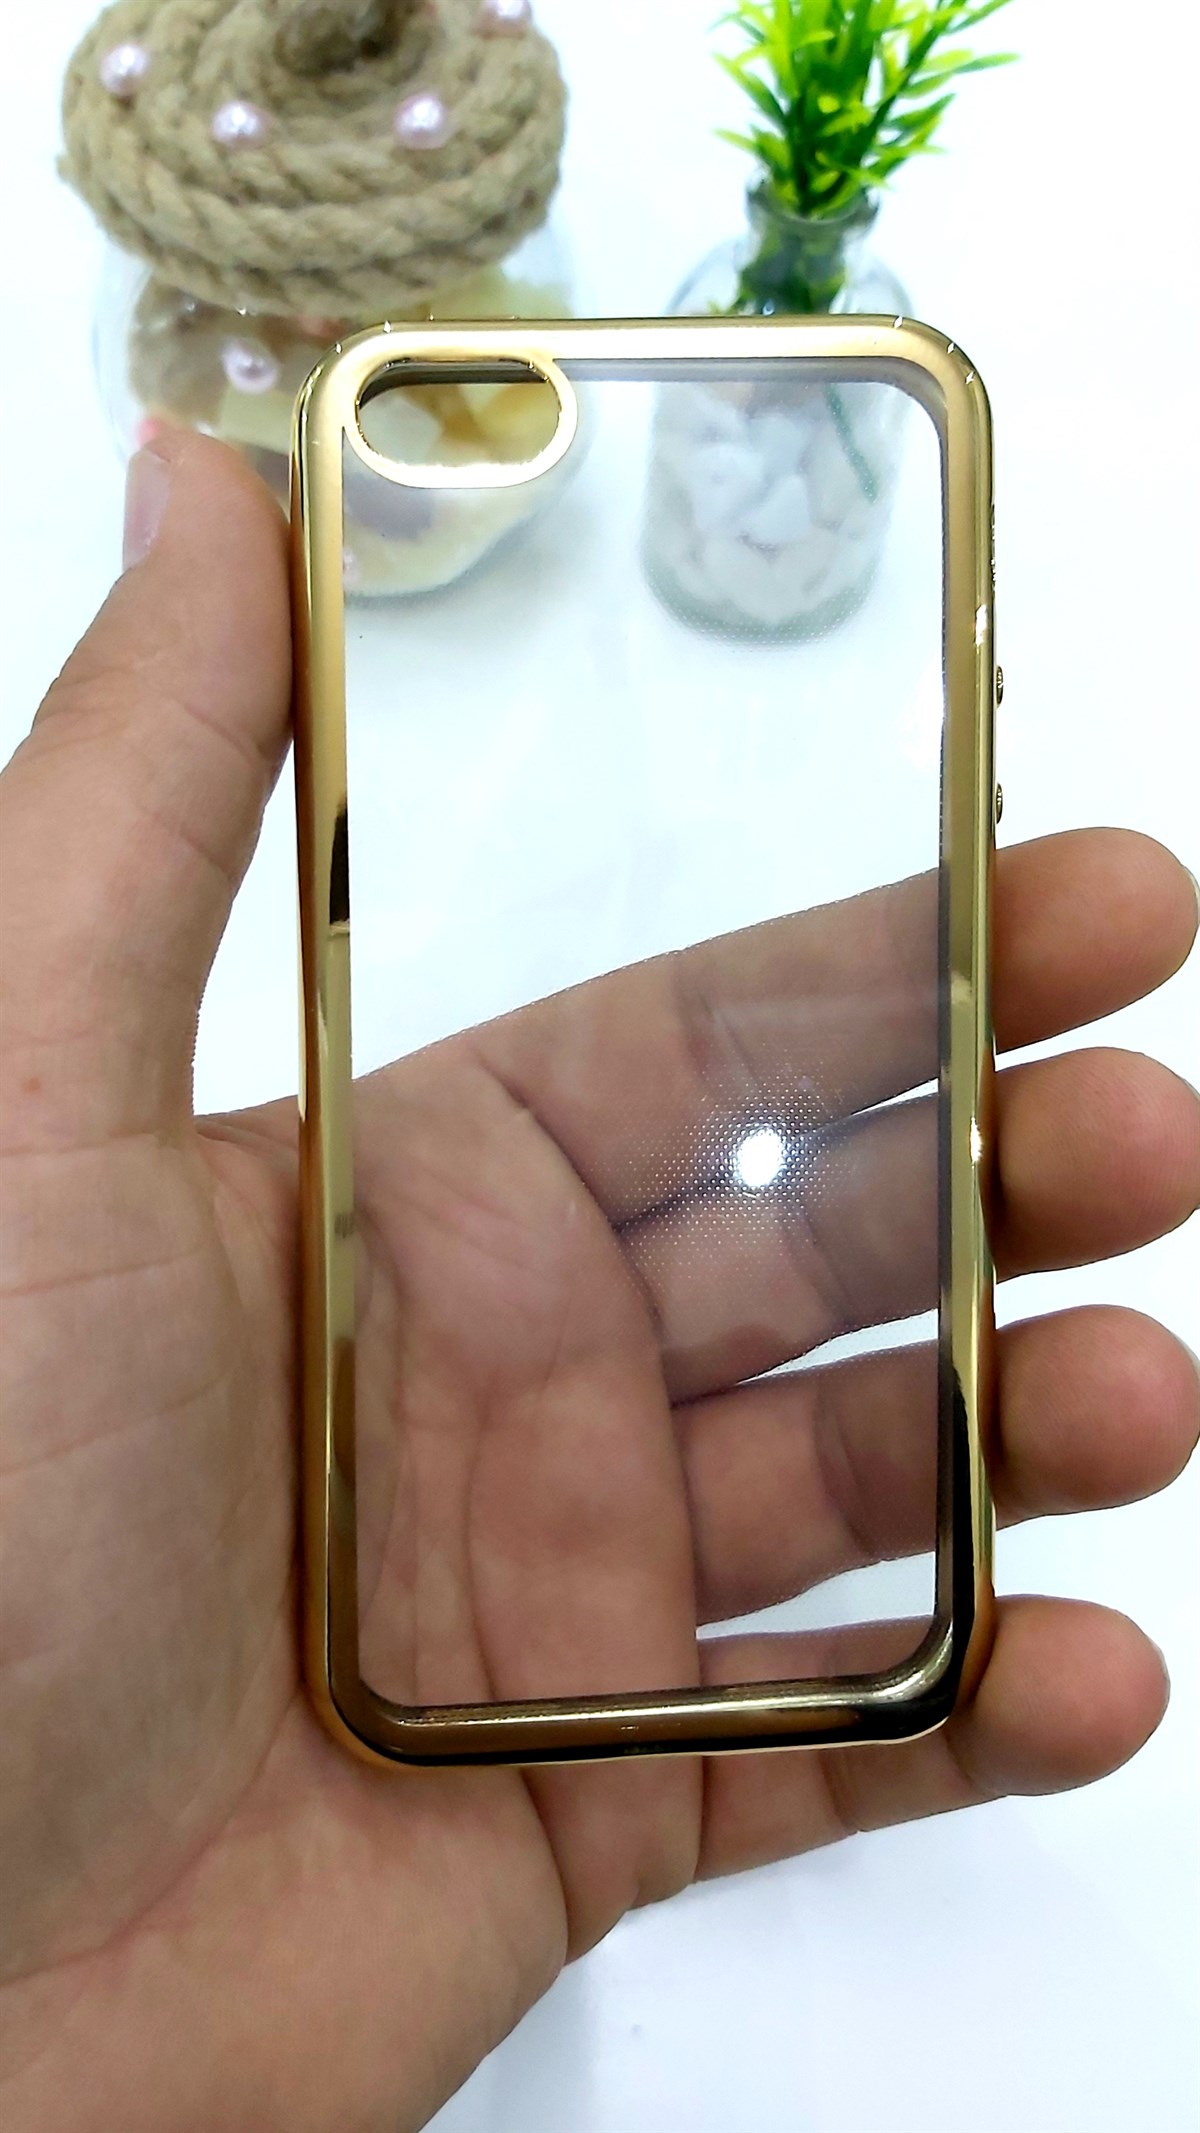 İphone 5 5S Şeffaf Silikon Kılıf Altın Gold Renk Çerçeveli JR